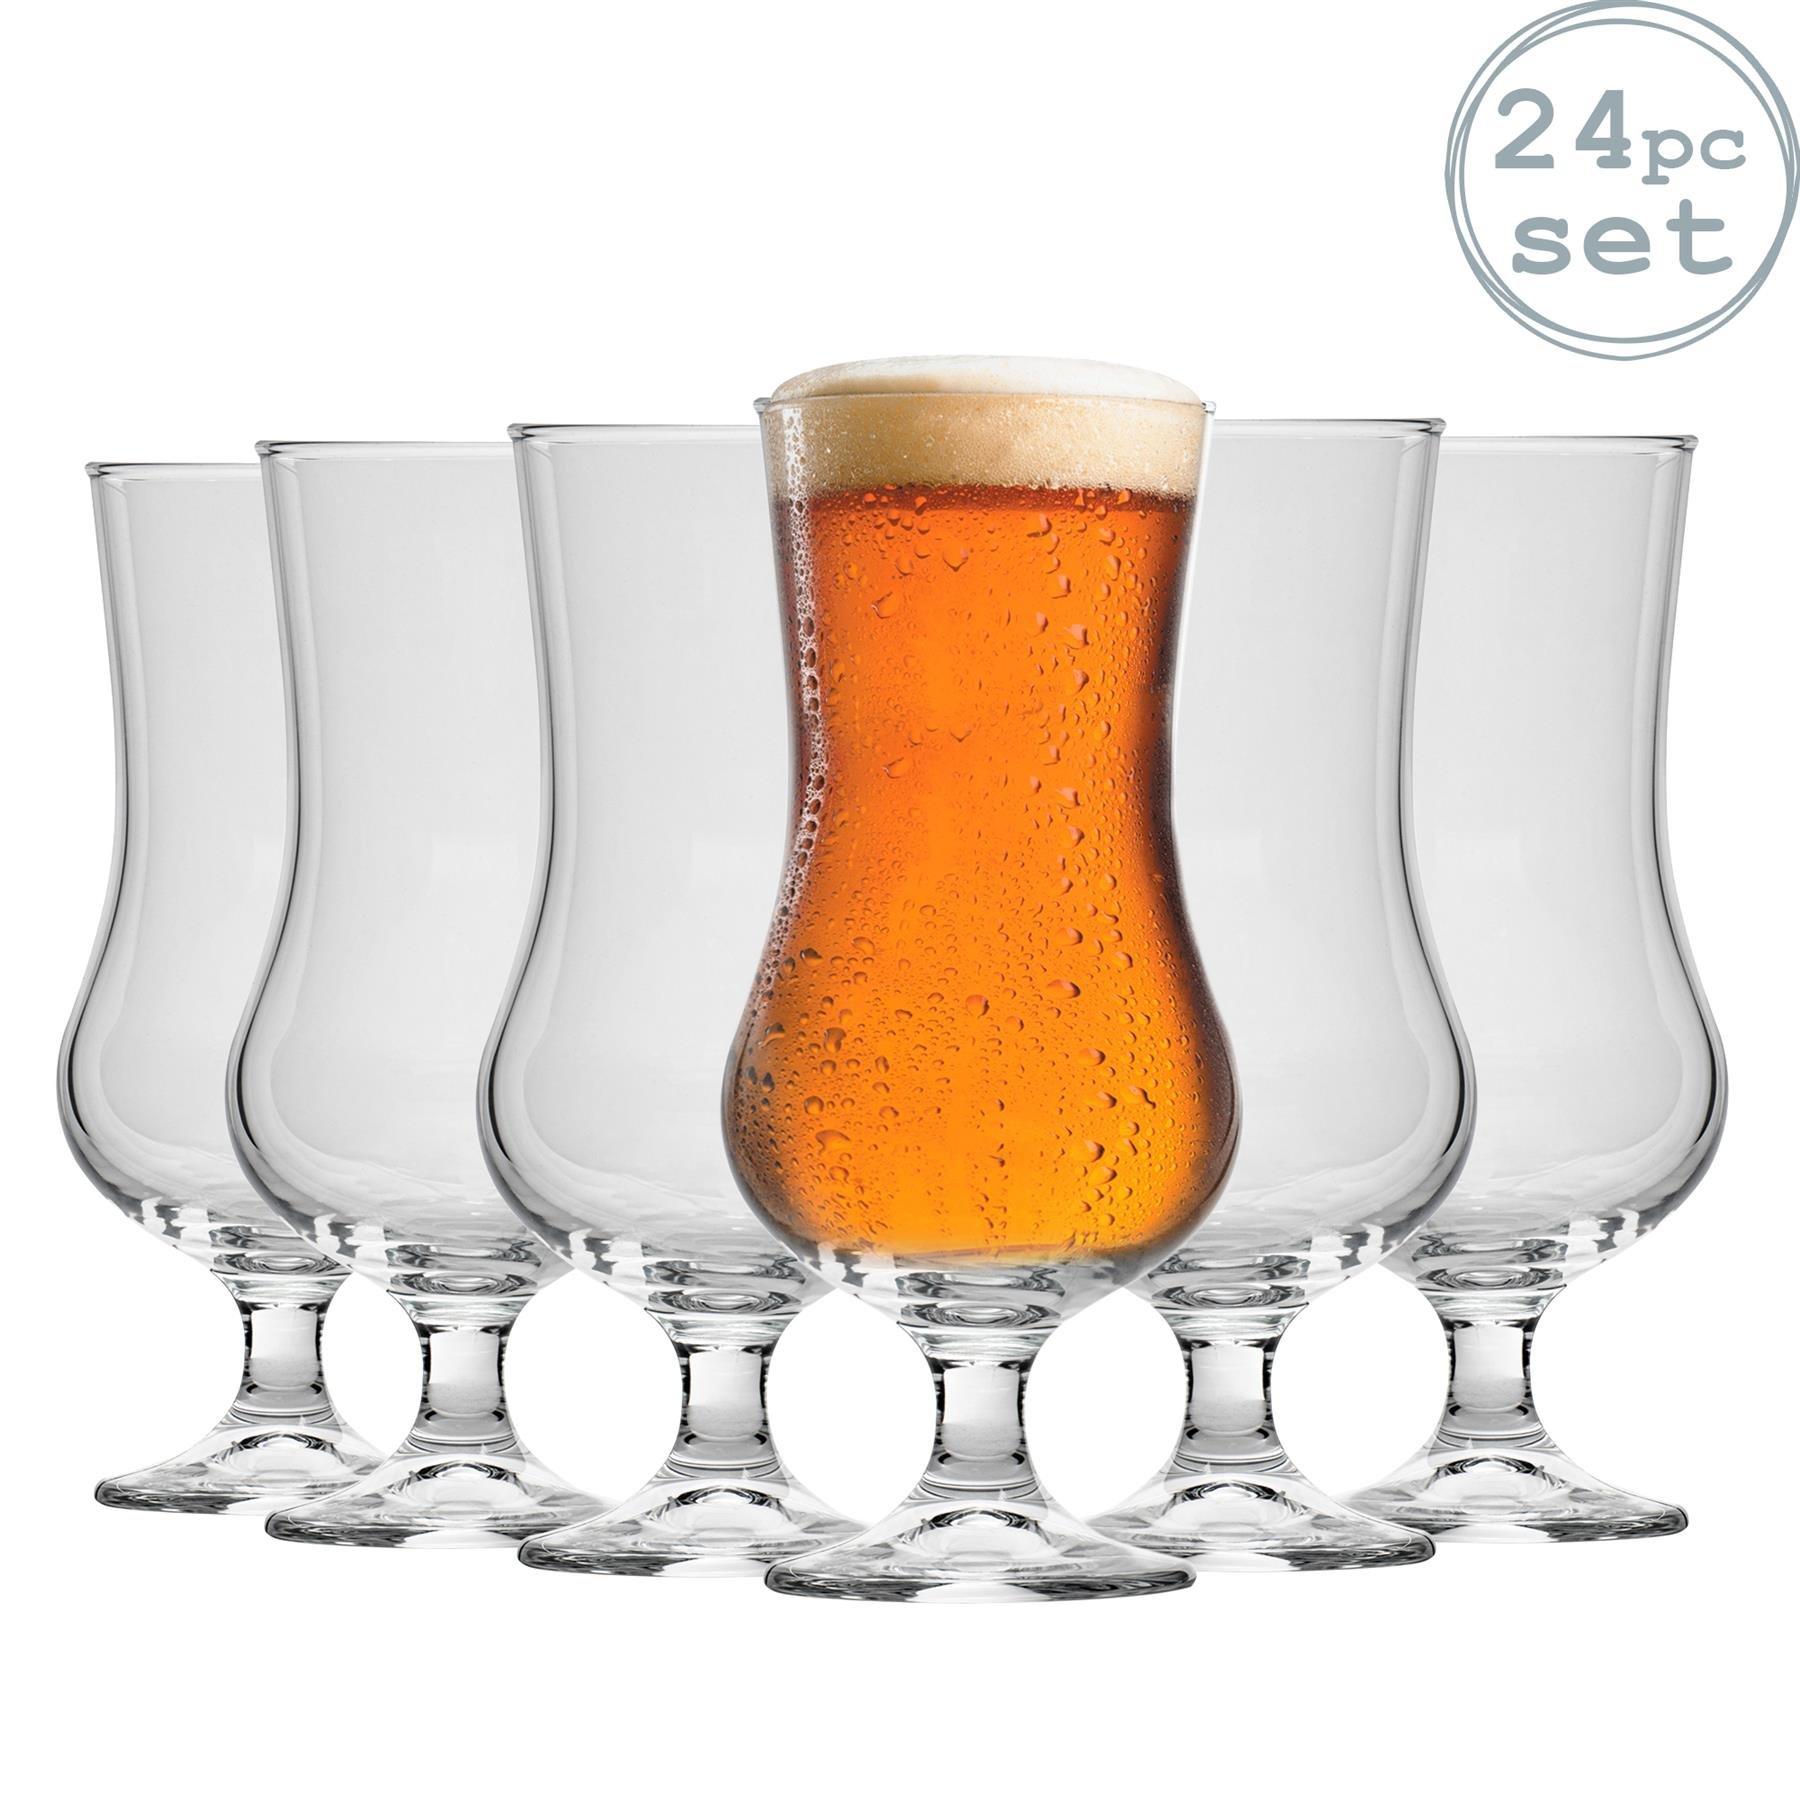 Ale Hurricane Beer Glasses - 500ml - Pack of 24